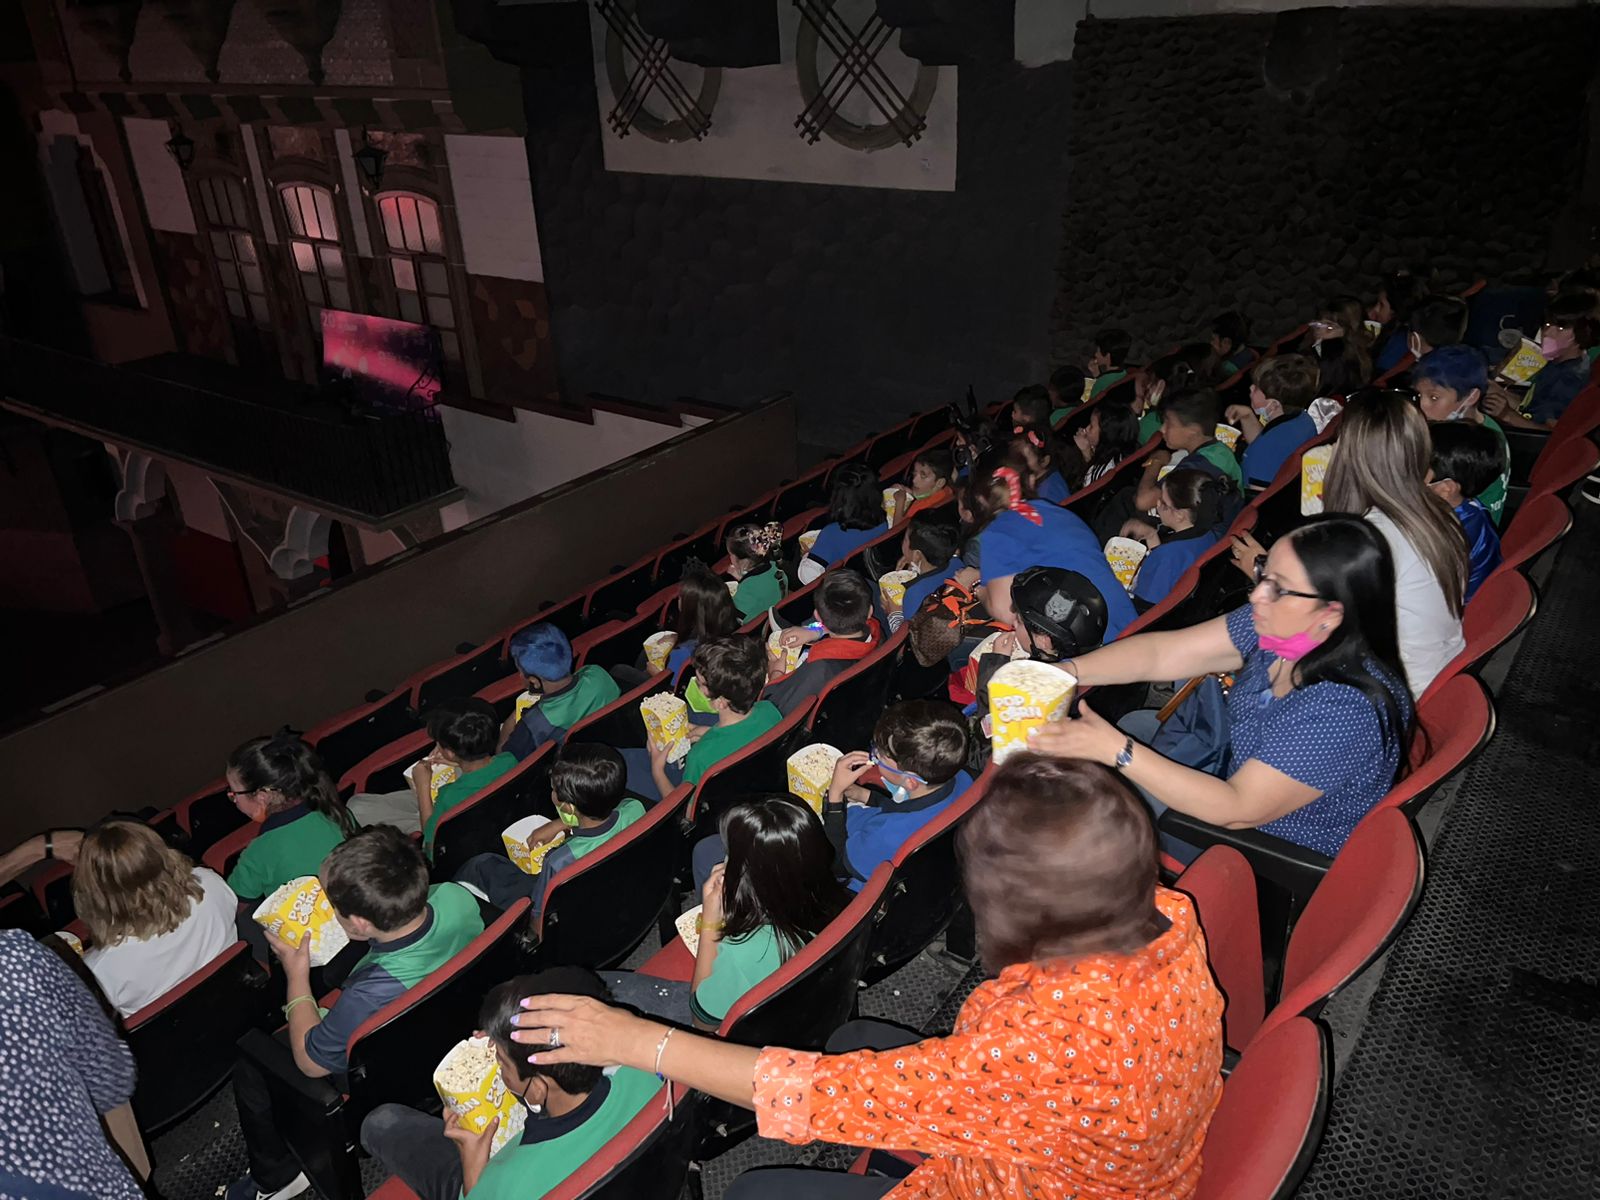 Se proyectará Toy Story en Cineteca Alameda con permanencia voluntaria el próximo domingo 30 de abril.